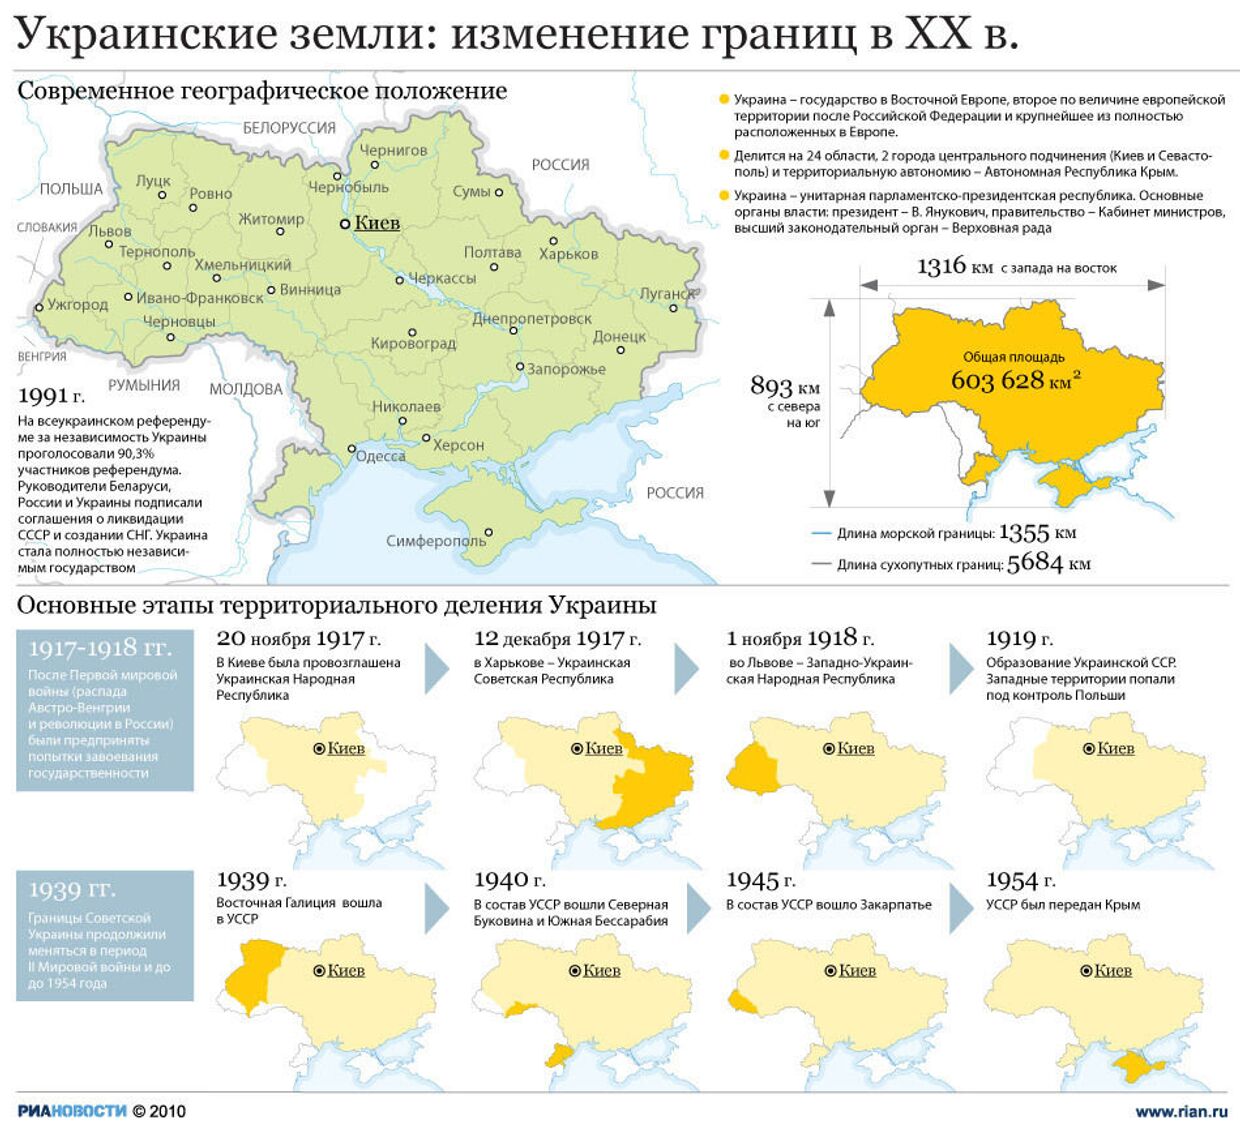 Украинские земли: изменение границ в XX в.